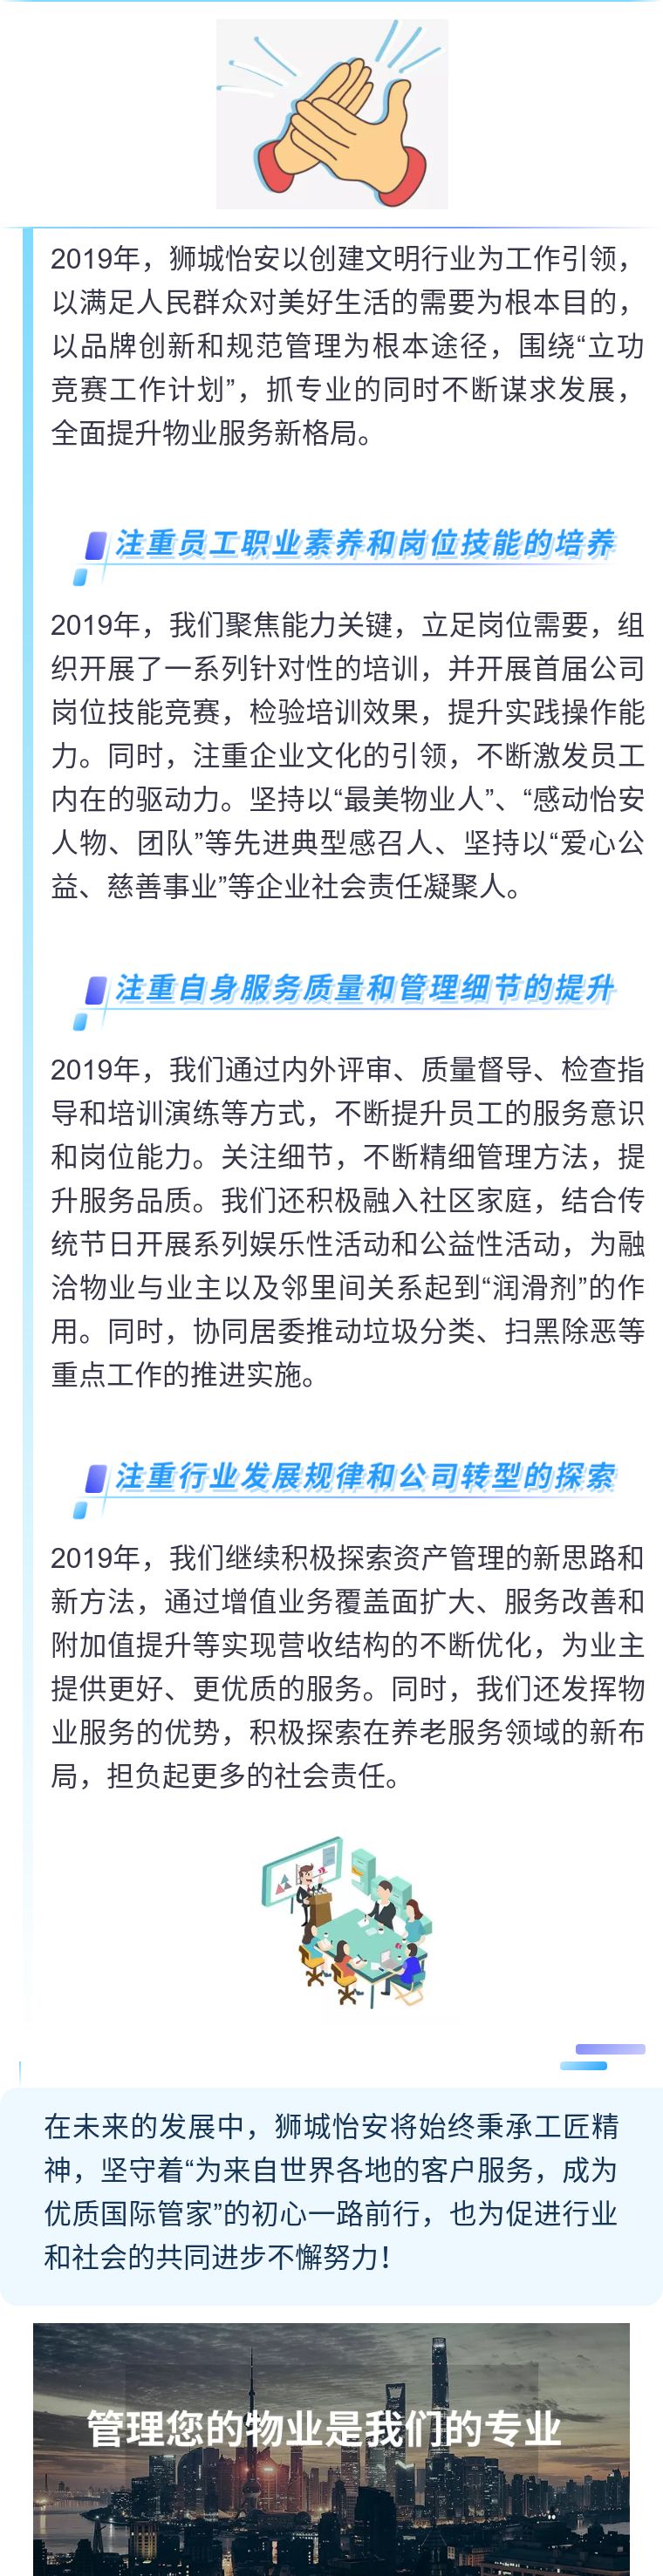 狮城怡安荣获2019年度上海市房屋管理实事立功竞赛物业管理分赛区优秀公司